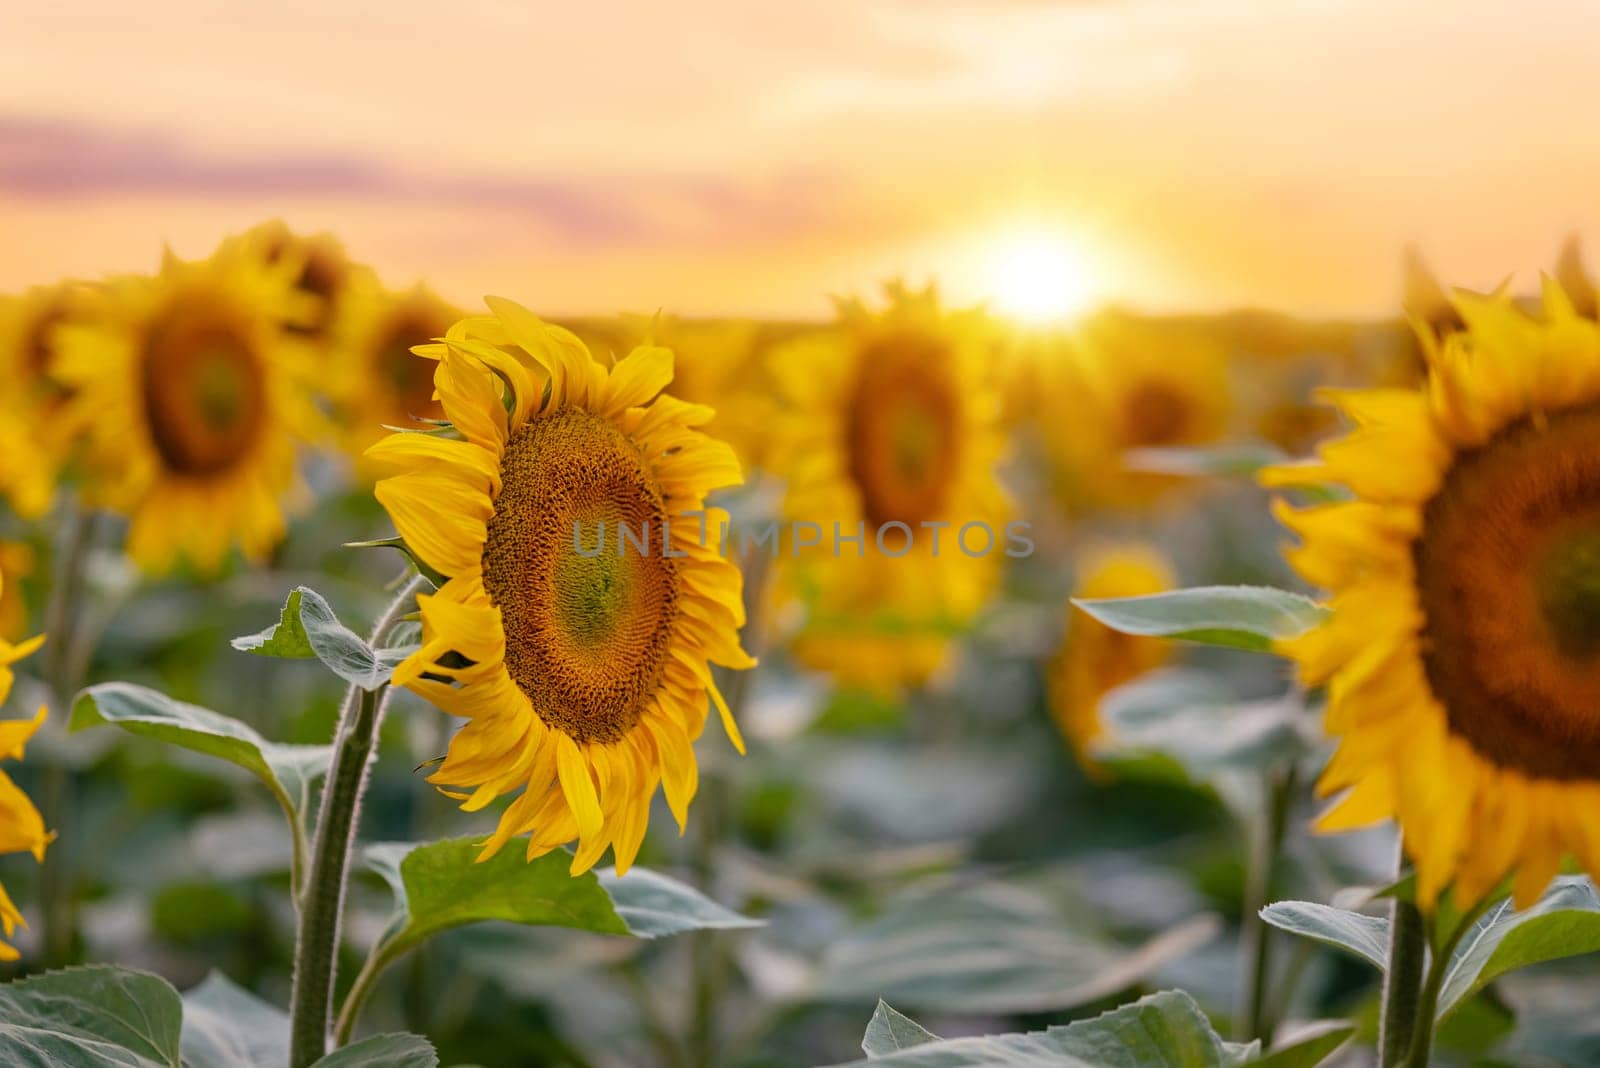 Bright ripe sunflowers at sunset by VitaliiPetrushenko